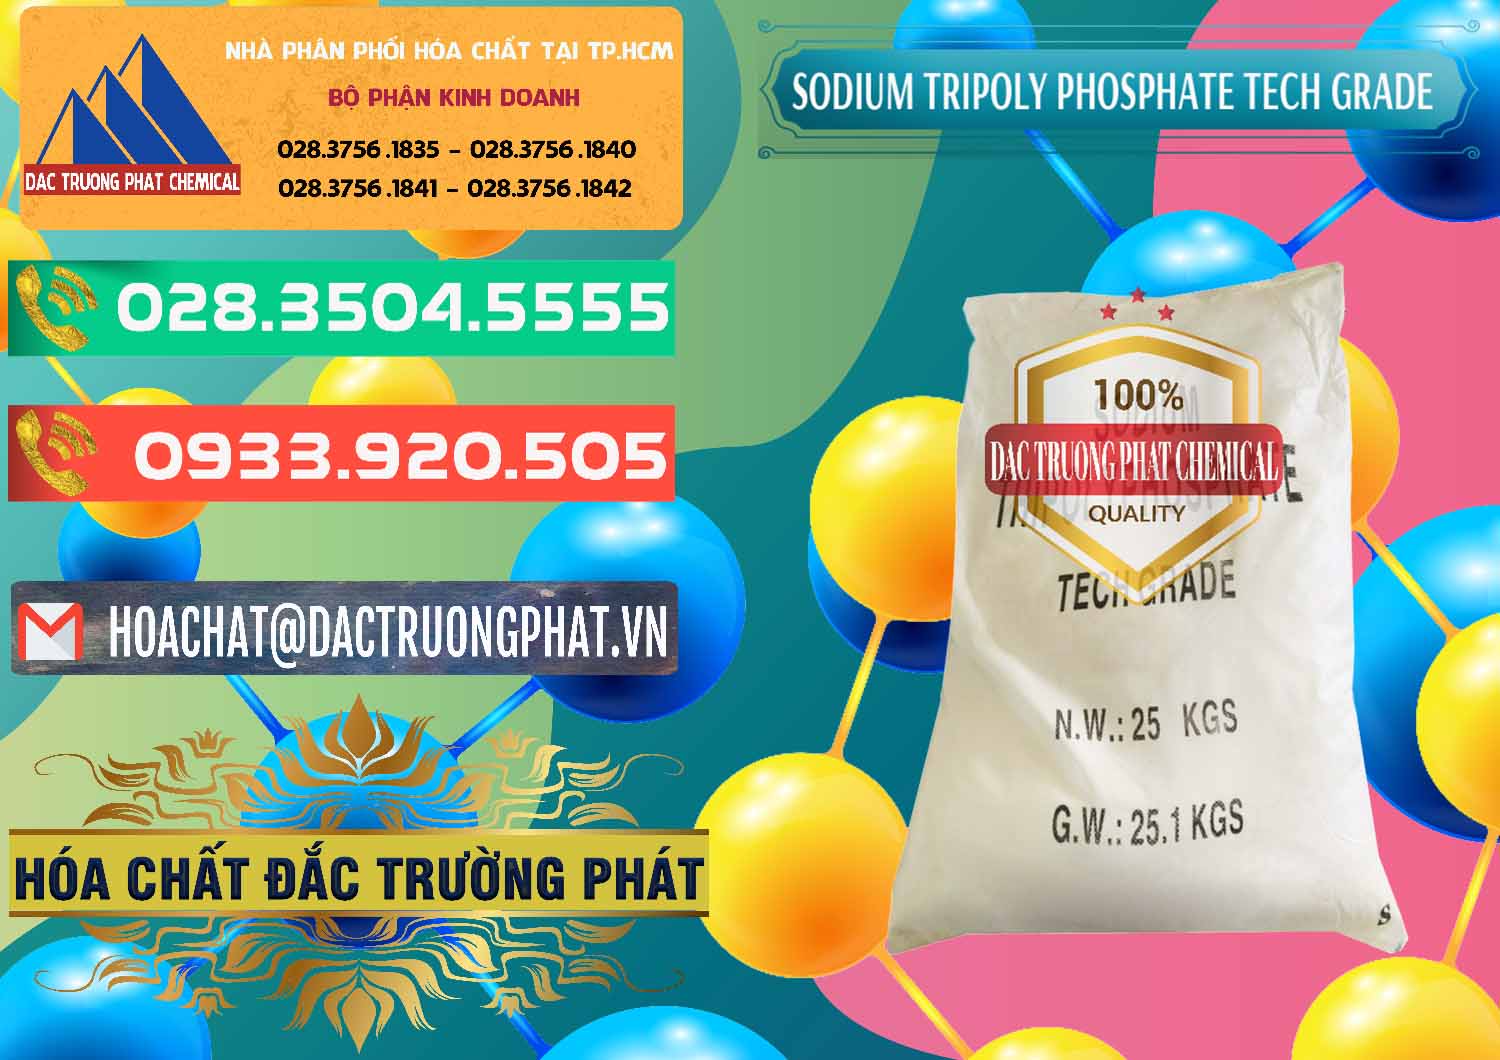 Nơi chuyên bán - phân phối Sodium Tripoly Phosphate - STPP Tech Grade Trung Quốc China - 0453 - Cty chuyên cung cấp & nhập khẩu hóa chất tại TP.HCM - congtyhoachat.com.vn